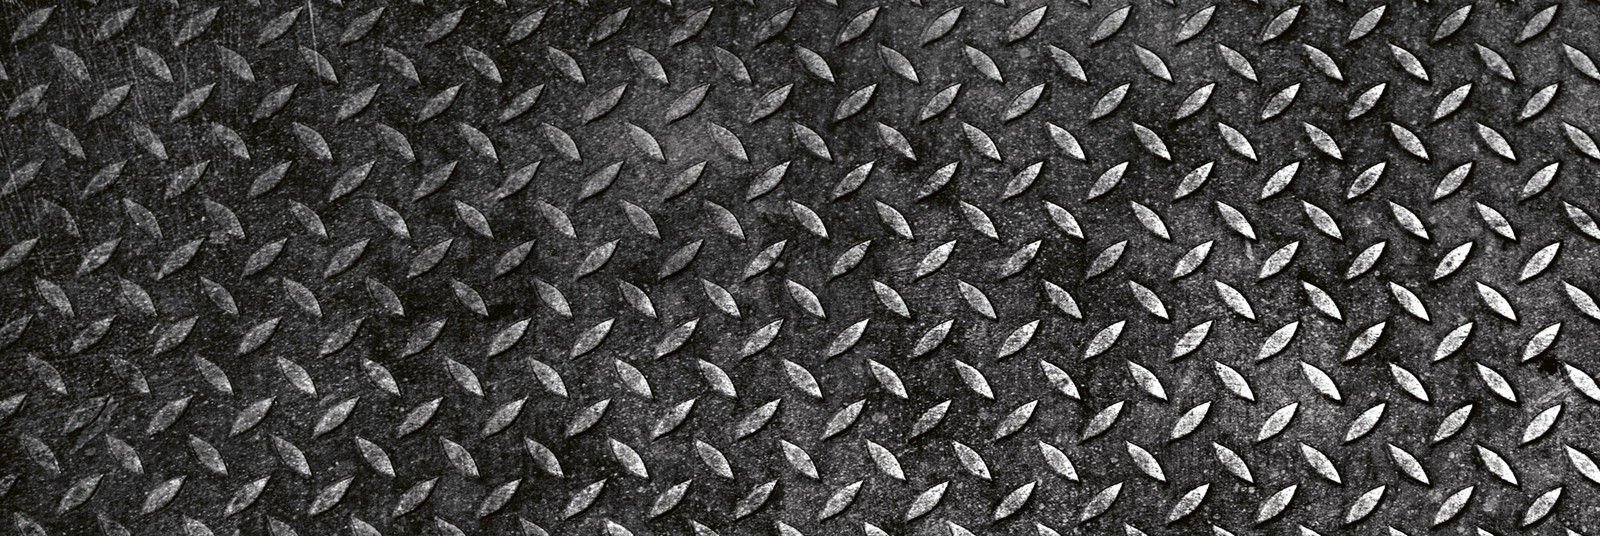 Samoljepljiva periva tapeta za kuhinju - Metalna obloga, 180x60 cm